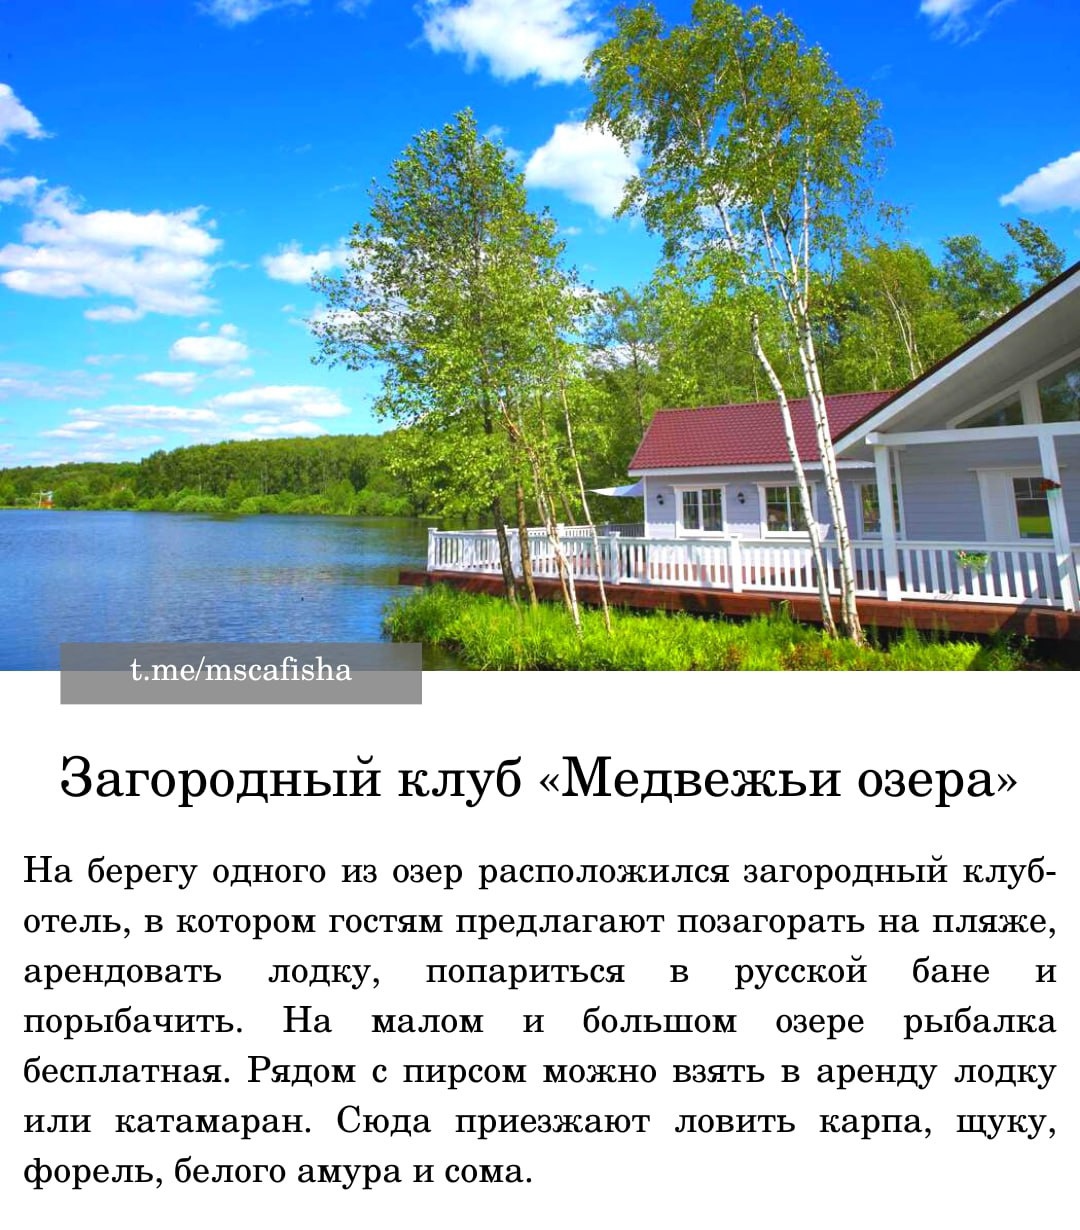 Рыбалка в республике татарстан: лучшие места на карте